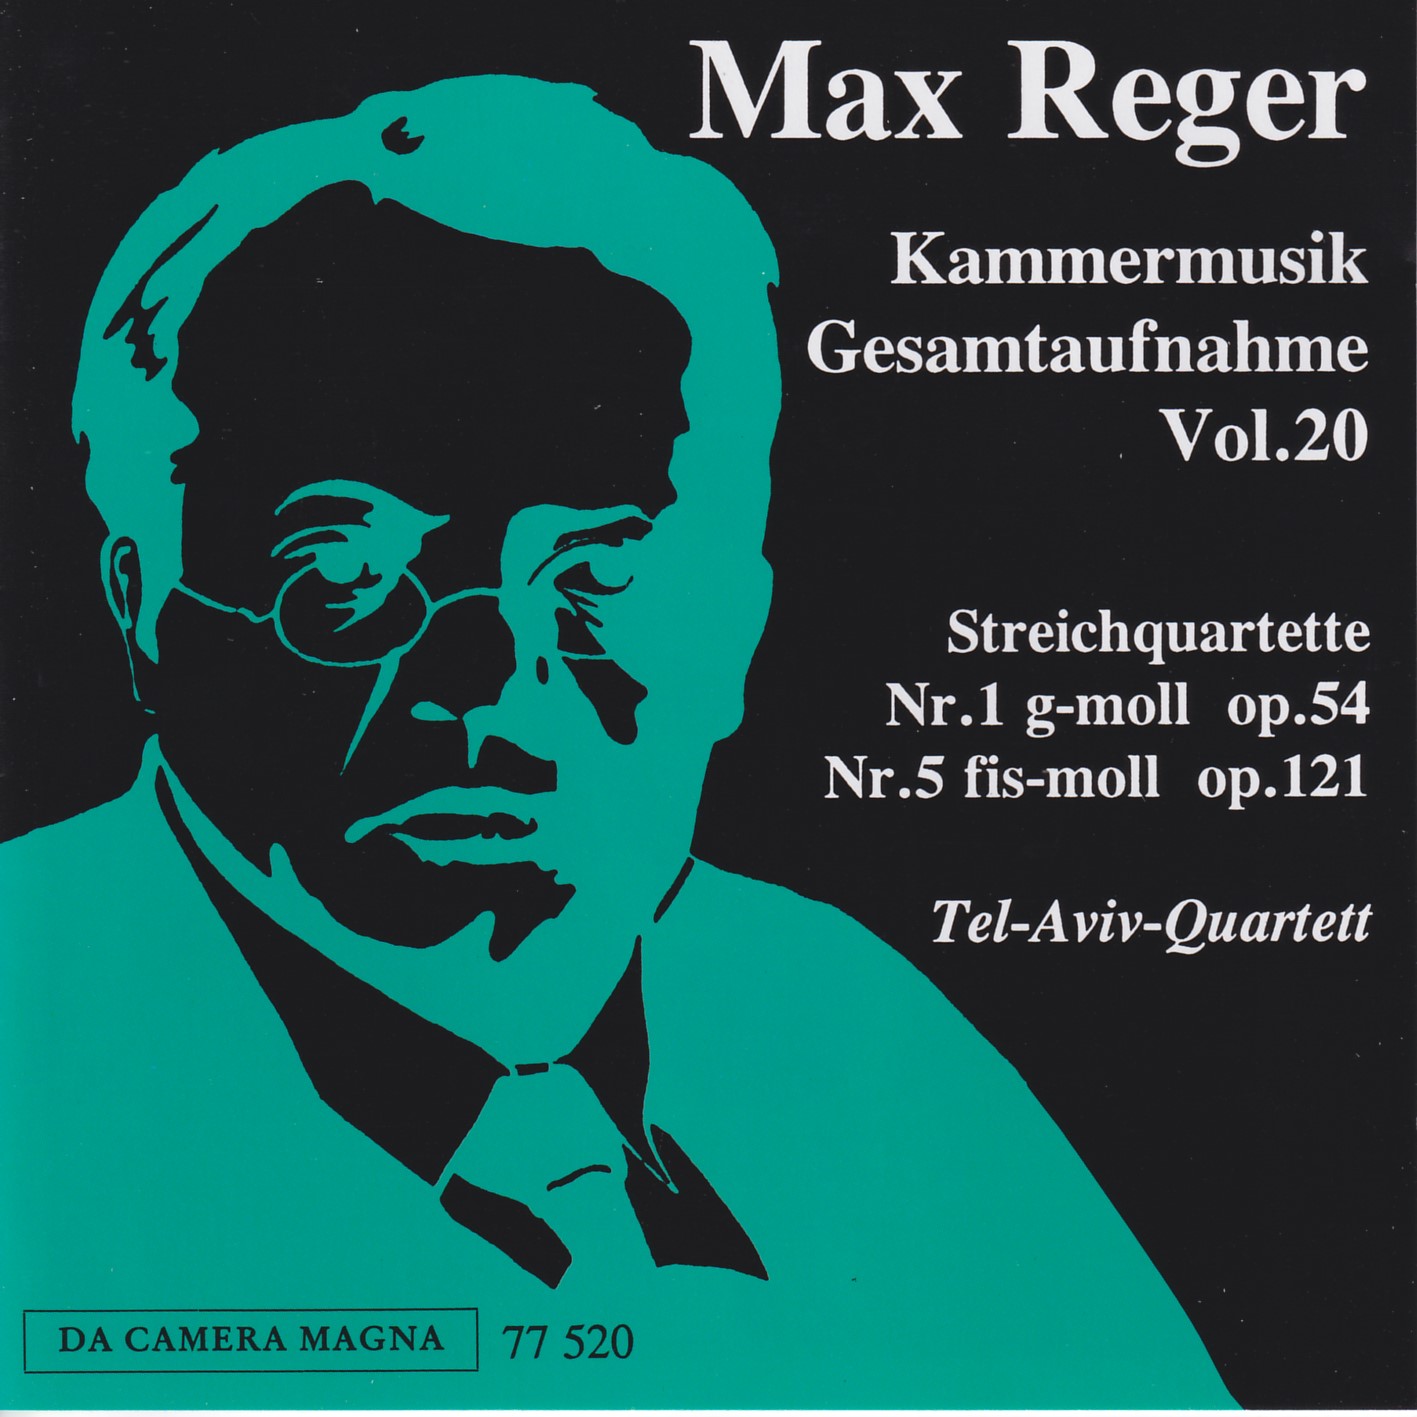 Max Reger - Kammermusik komplett Vol. 20